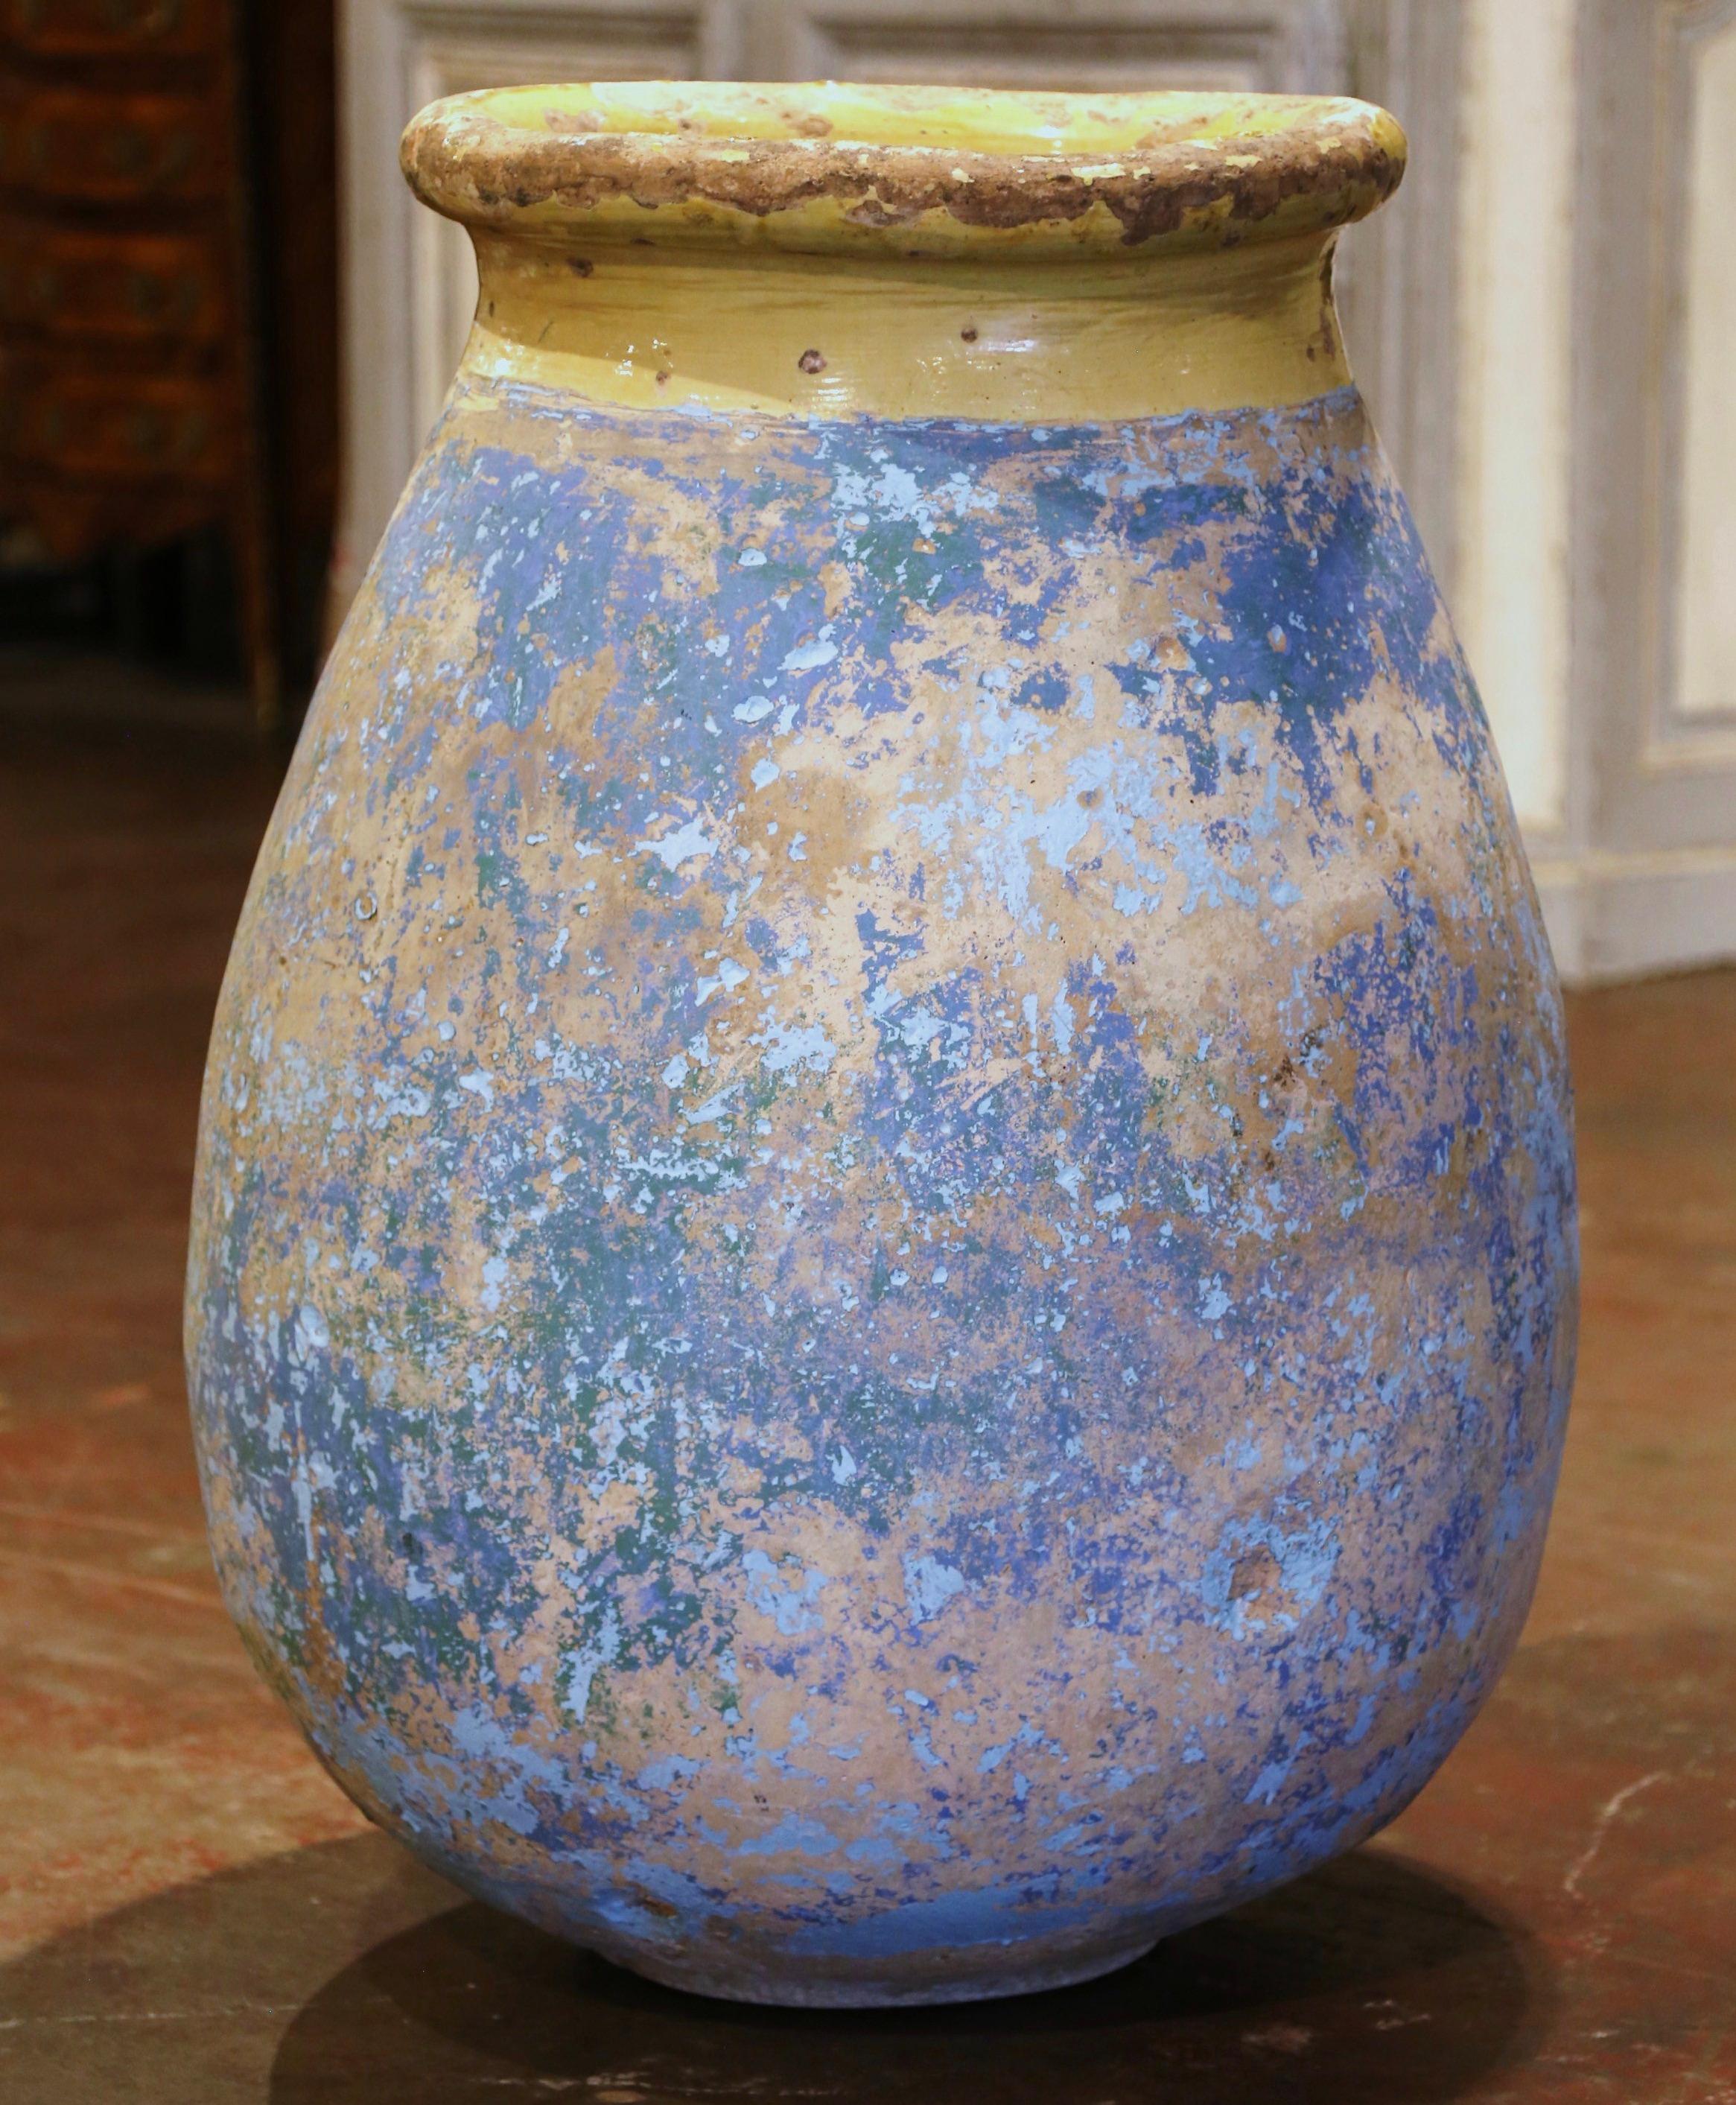 Cette grande jarre à olives ancienne en faïence a été créée à Biot, en Provence, dans le sud de la France, vers 1760. Fabriqué en argile blonde et de couleur neutre, le vase en terre cuite a une forme ronde et bulbeuse traditionnelle. Ce pot